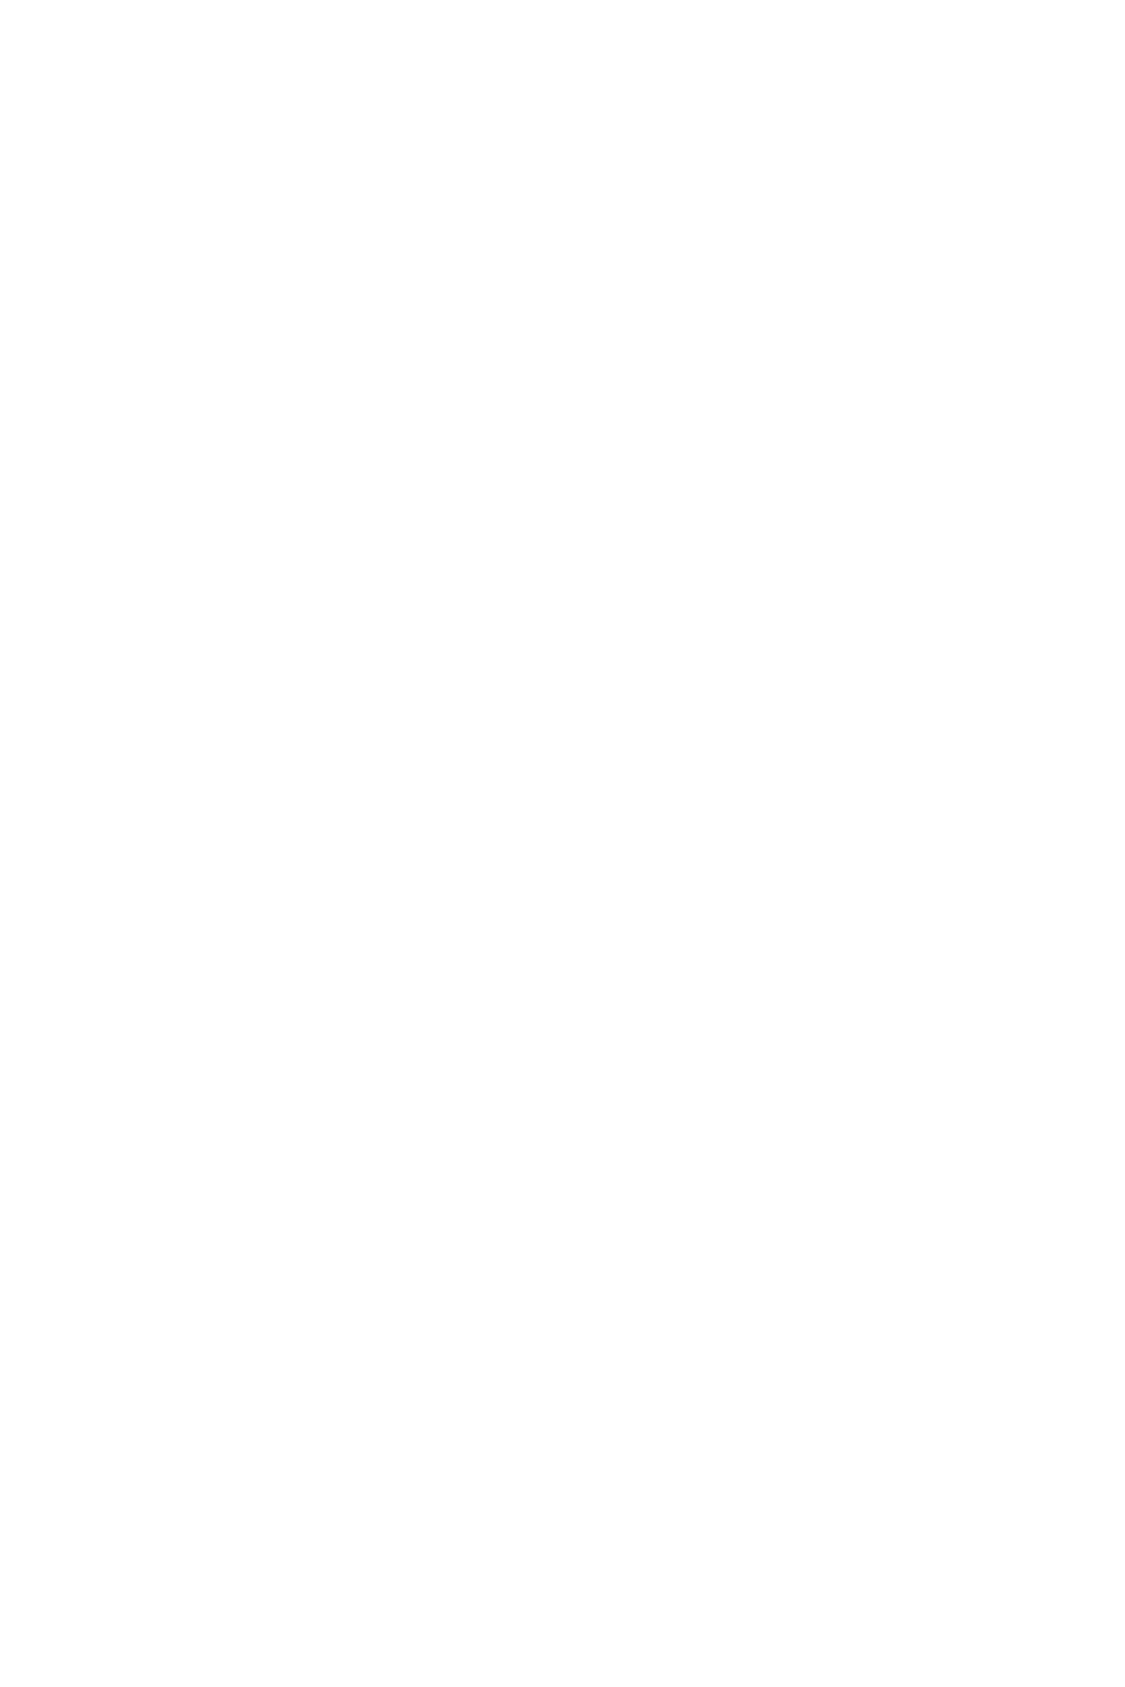 ディバインハート カレン 〜姦墜洗脳の罠〜 CGノベル版 総集編 モザイク版 2ページ